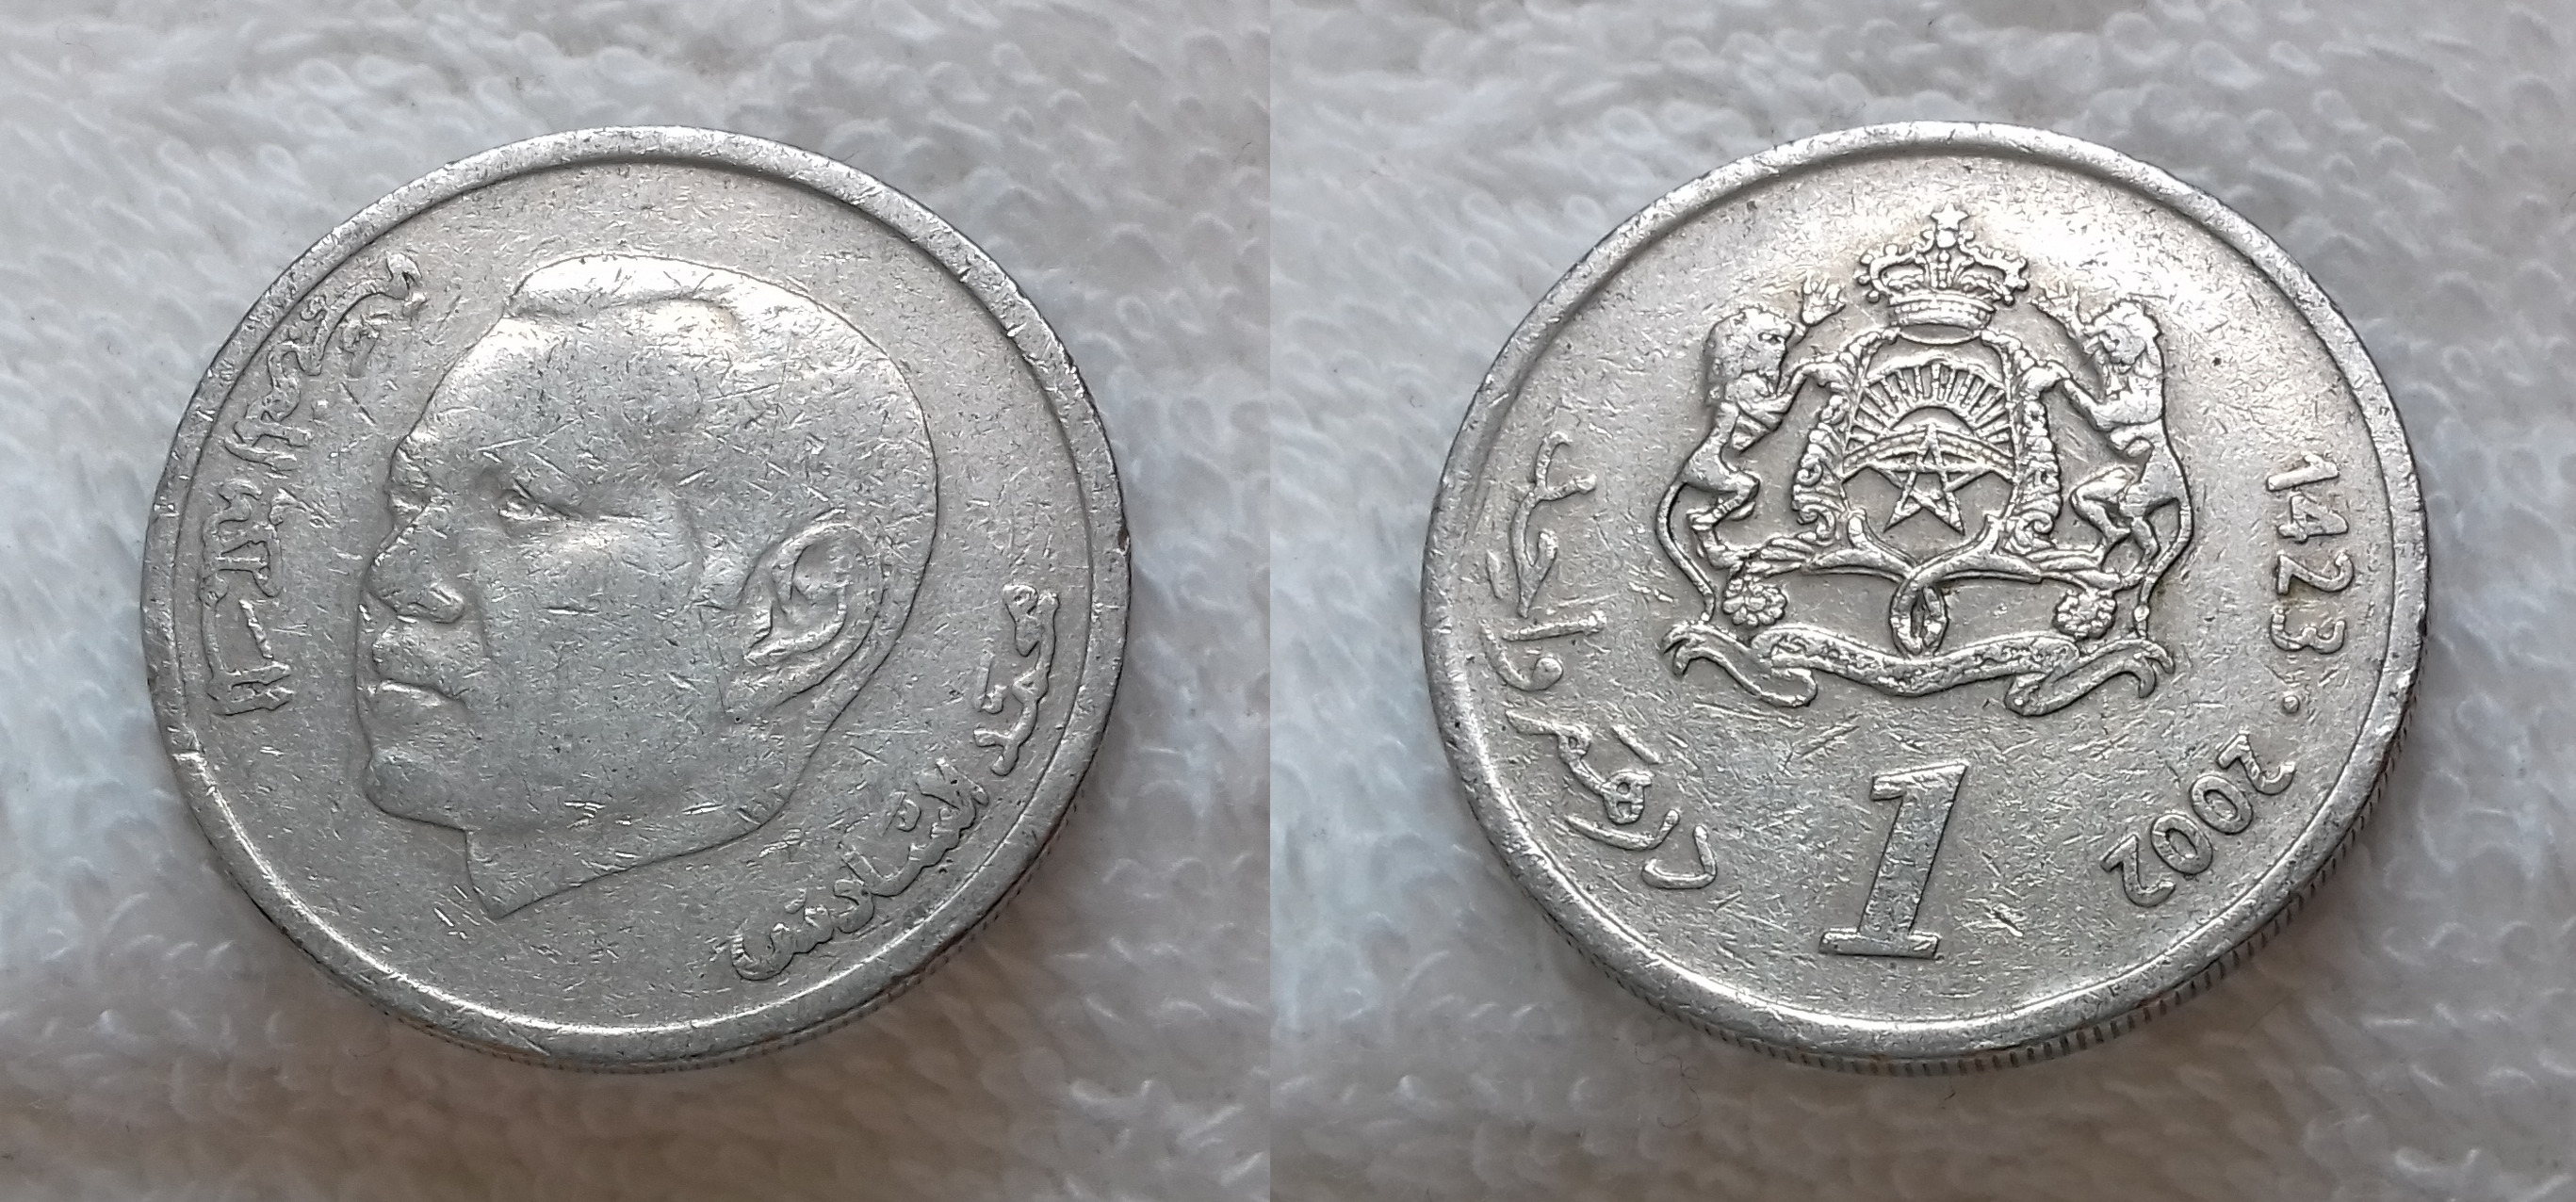 12000 дирхам. Монета Марокко 1 дирхам 2002. Марокко 0,5 dirham 2002. Марокканский дирхам. 30 Дирхам.